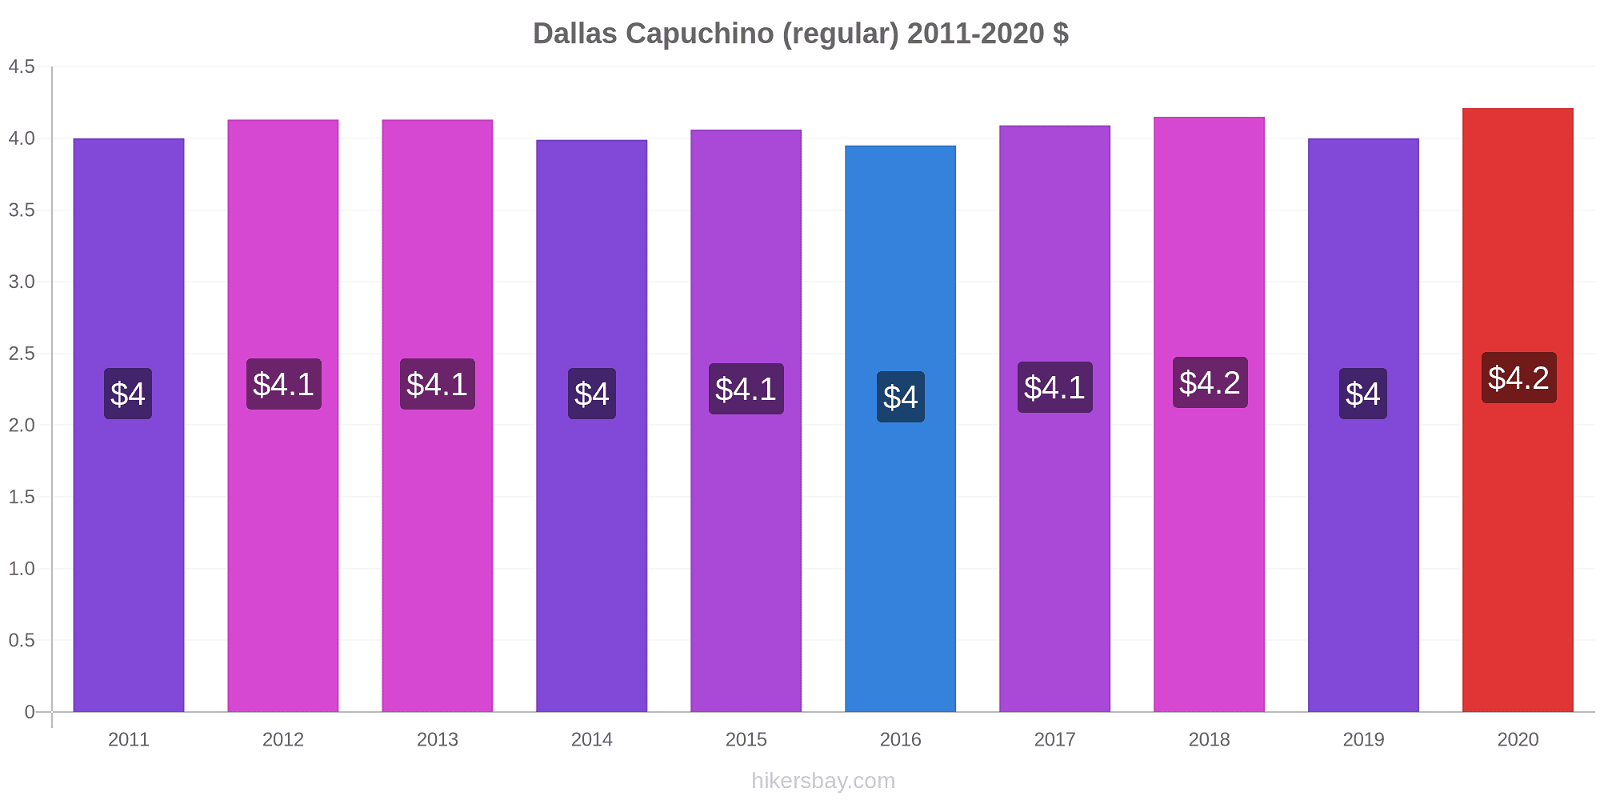 Dallas cambios de precios Capuchino (regular) hikersbay.com